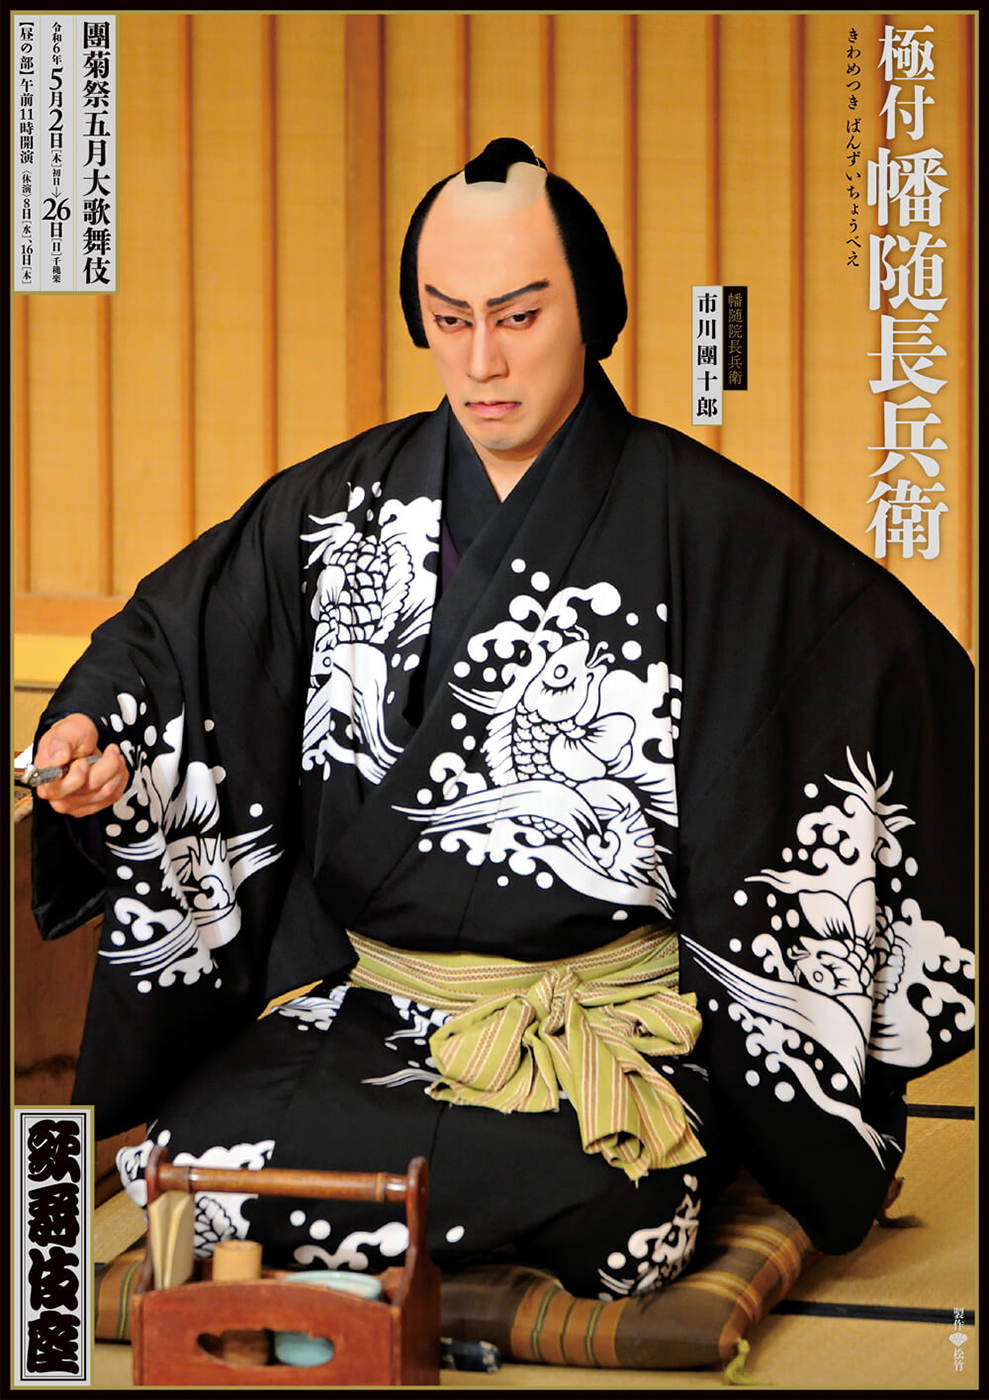 團菊祭五月大歌舞伎 昼の部『極付幡随長兵衛』歌舞伎座